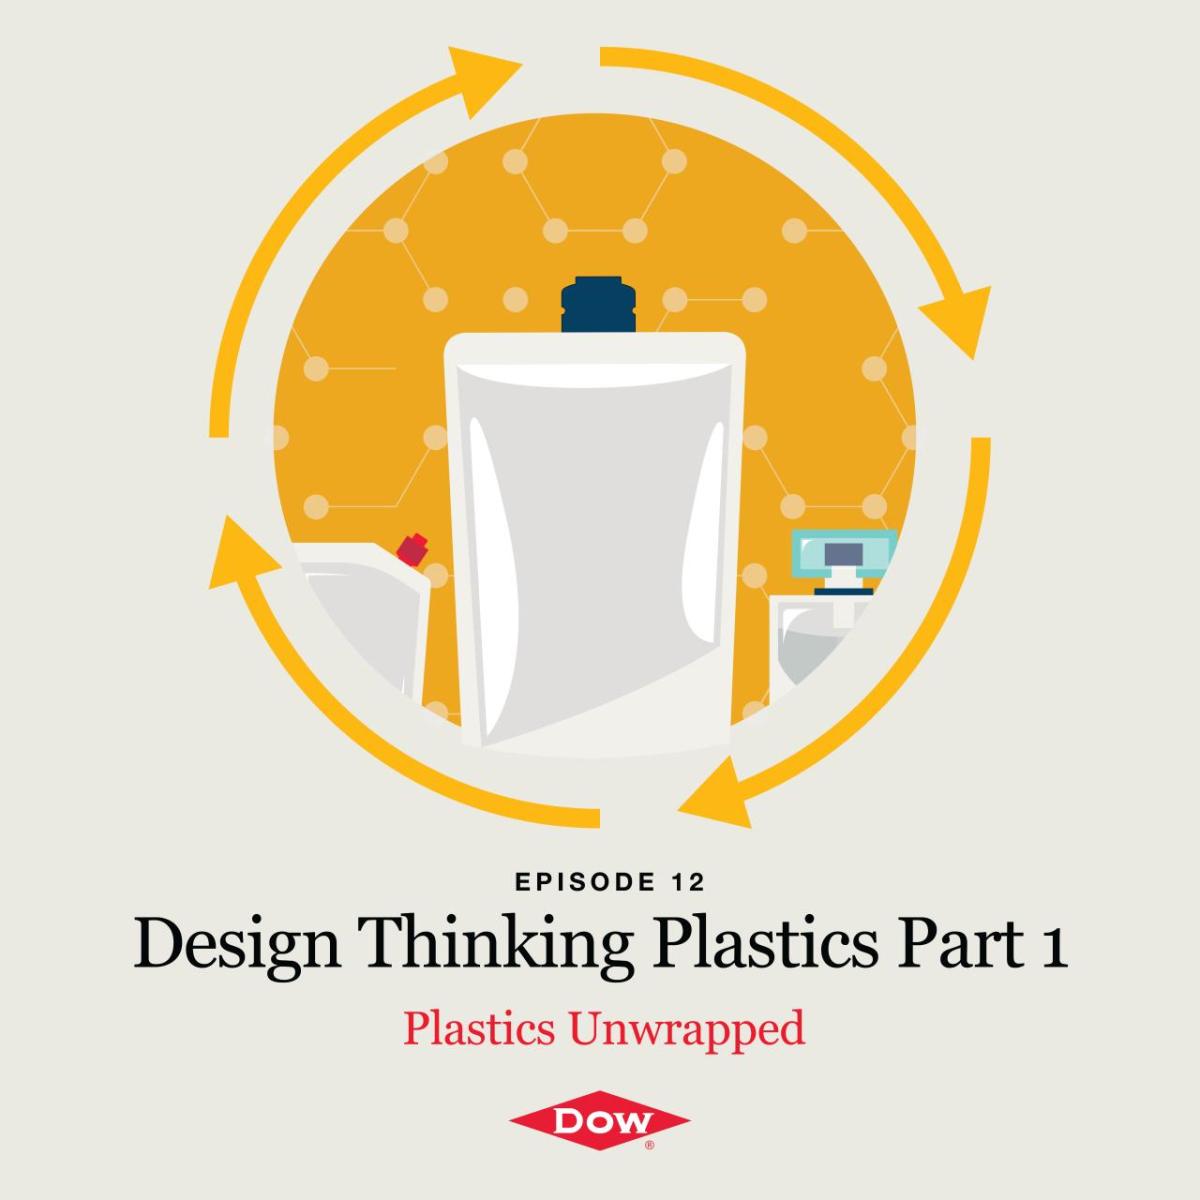 Design Thinking Plastics Part 1 Episode 12